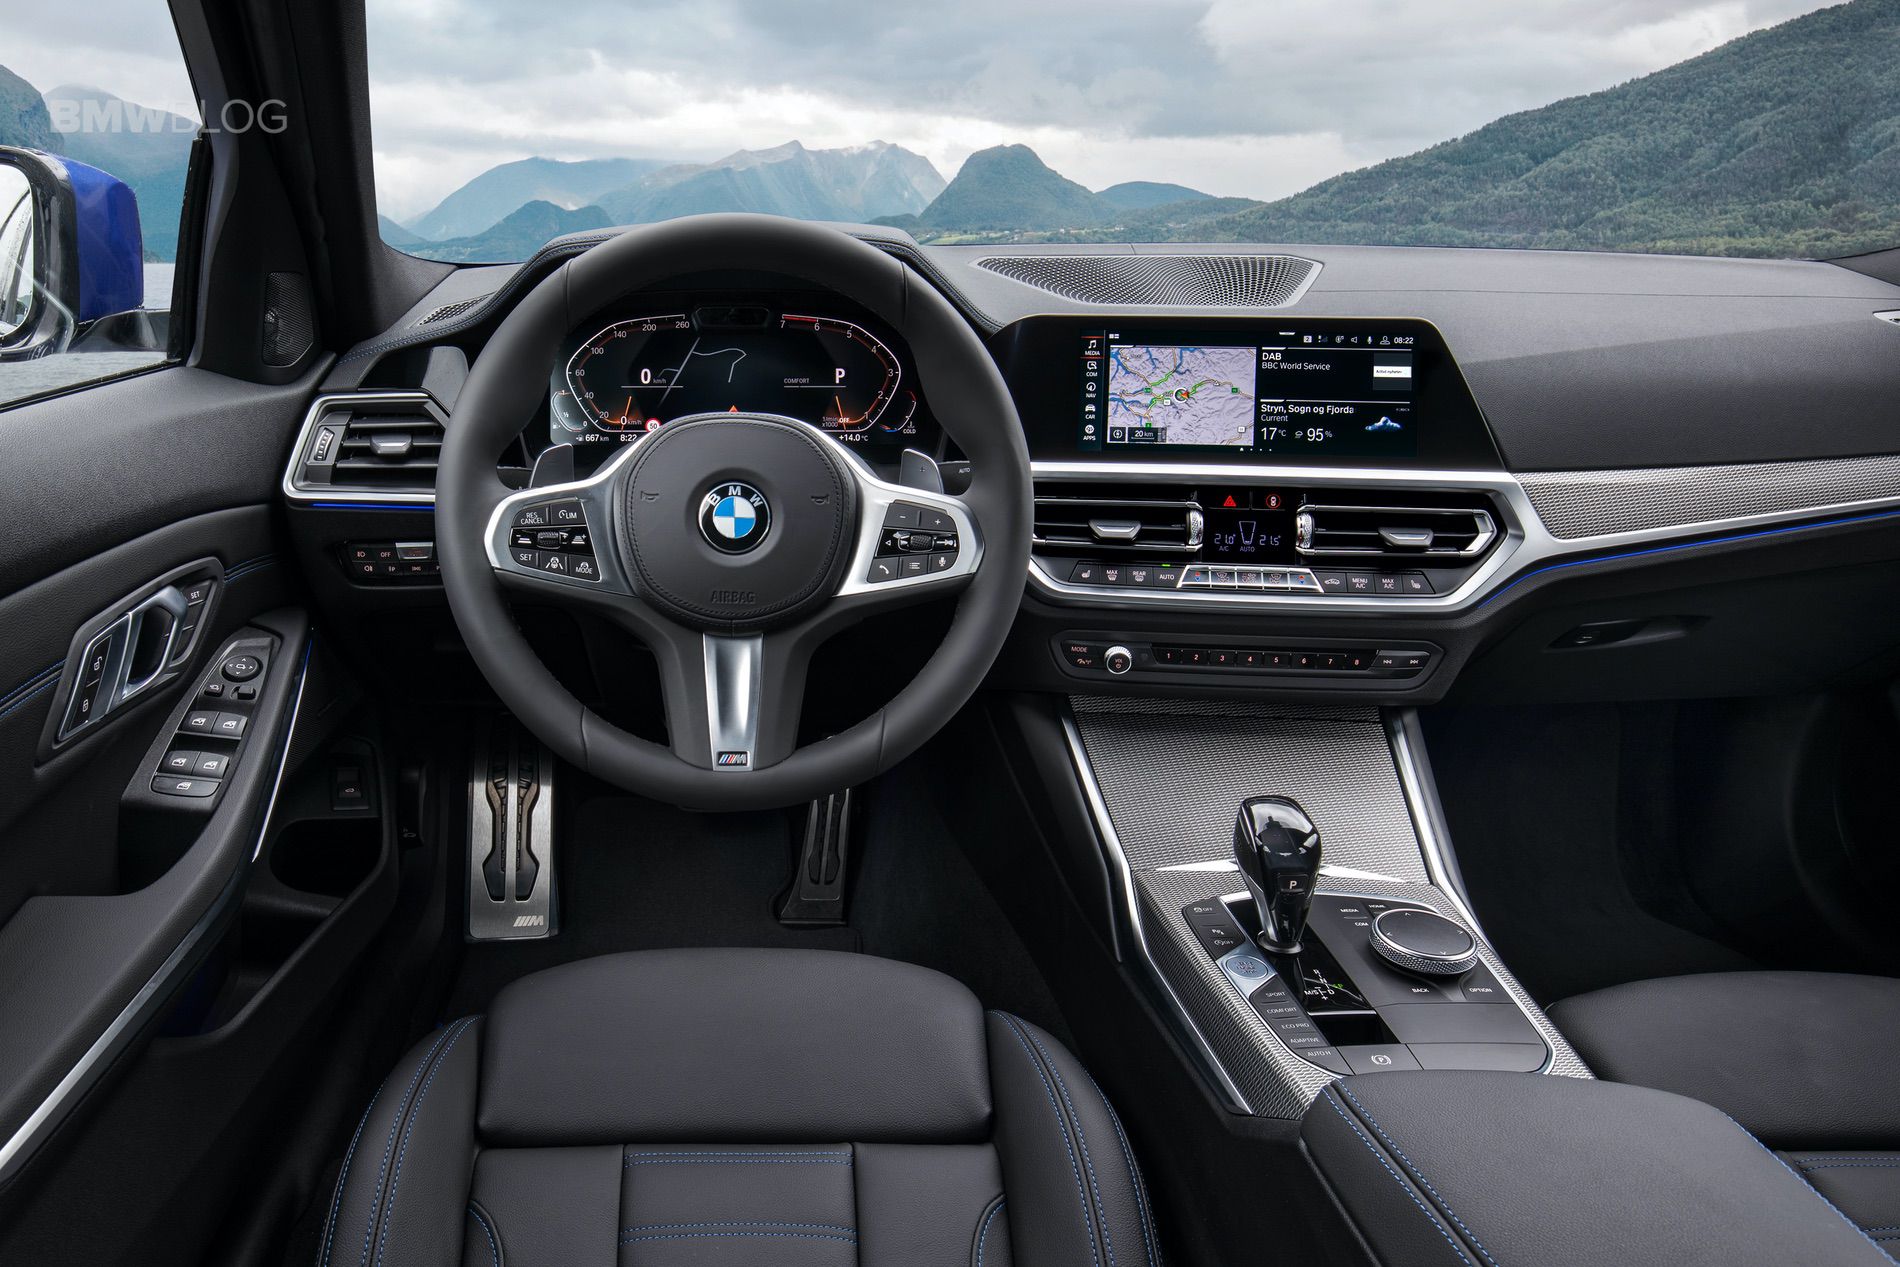 2019-BMW-3-Series-G20-interior-01.jpg